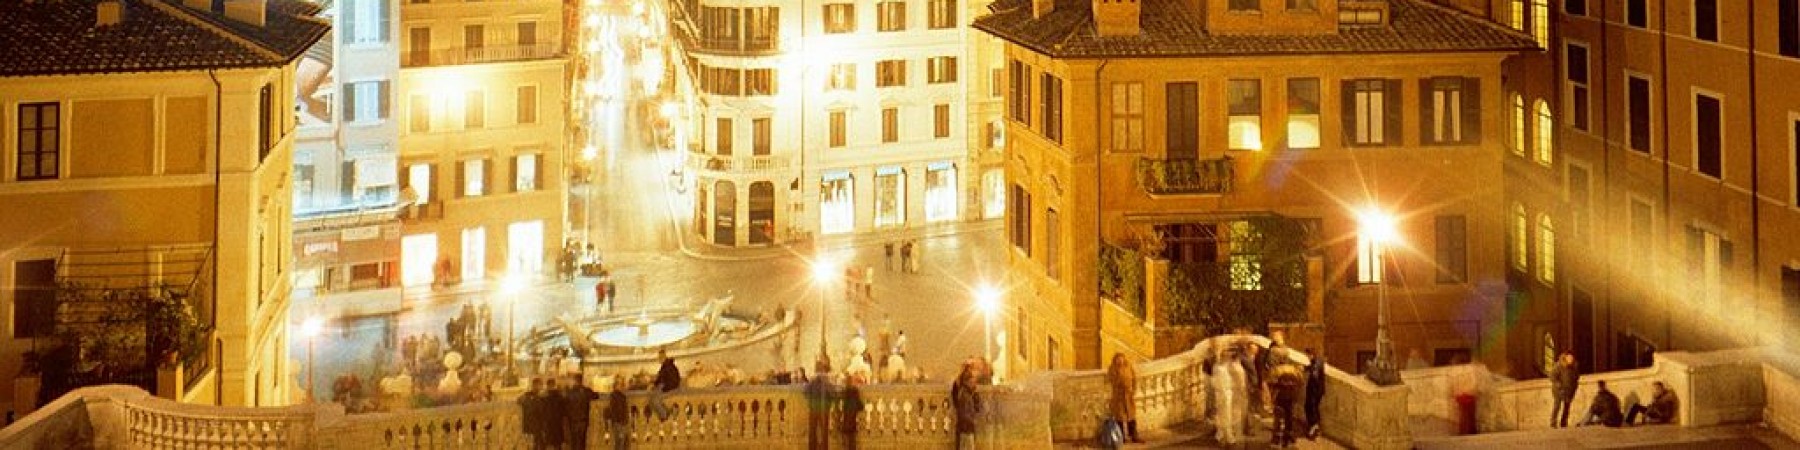 TOUR PRIVE - les plus belles places de Rome le soir